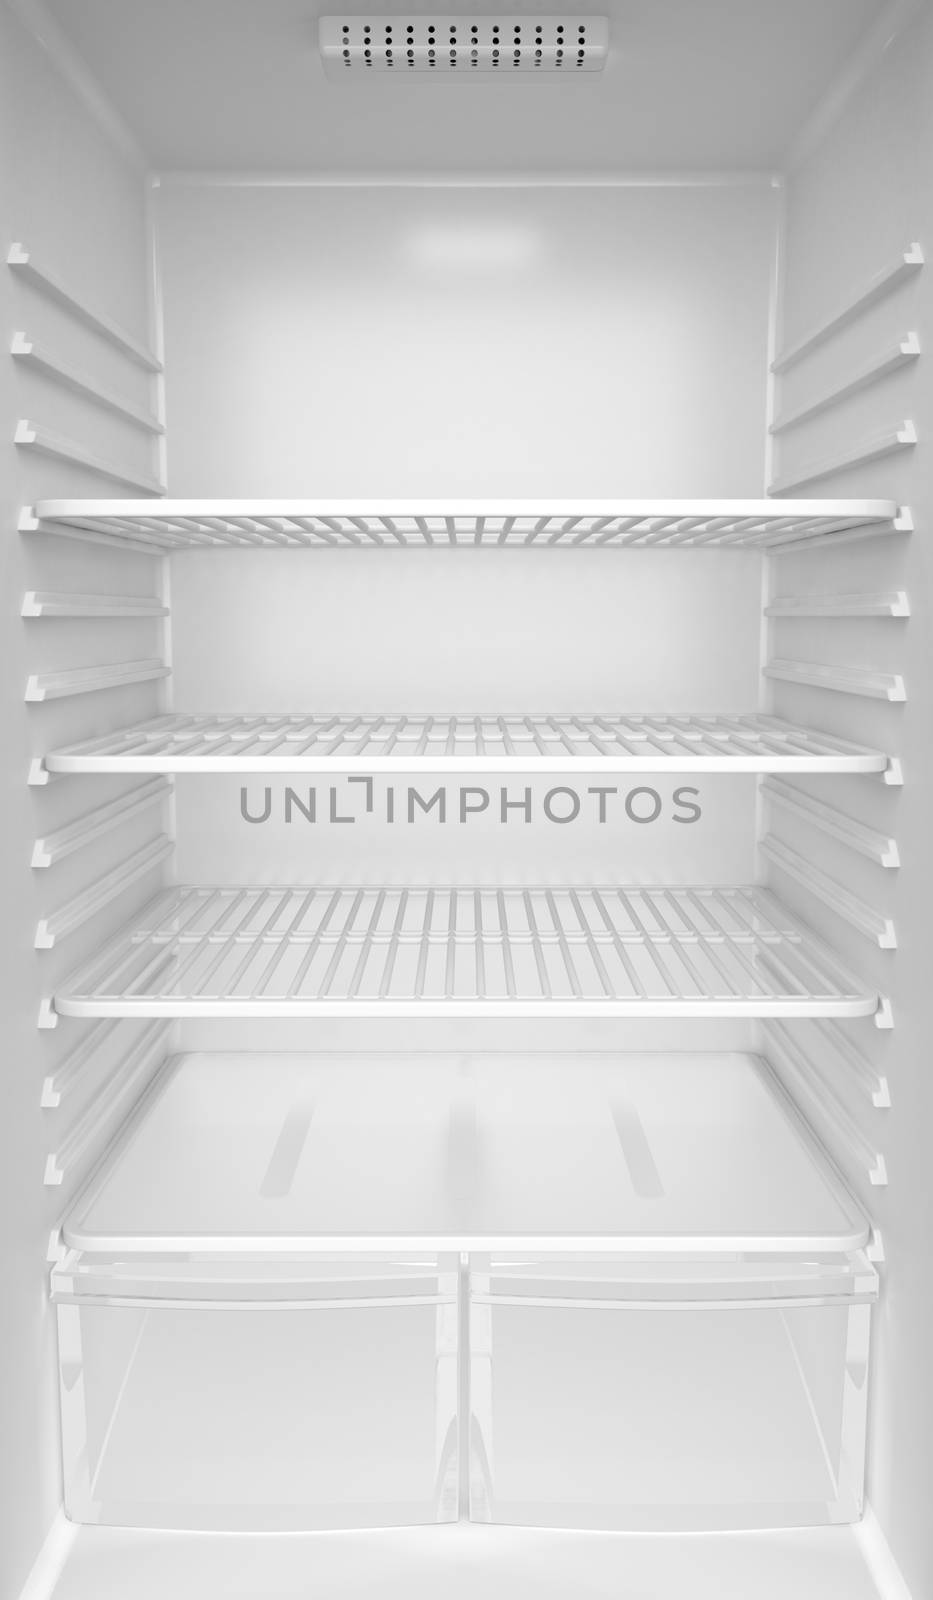 Inside of an empty white fridge